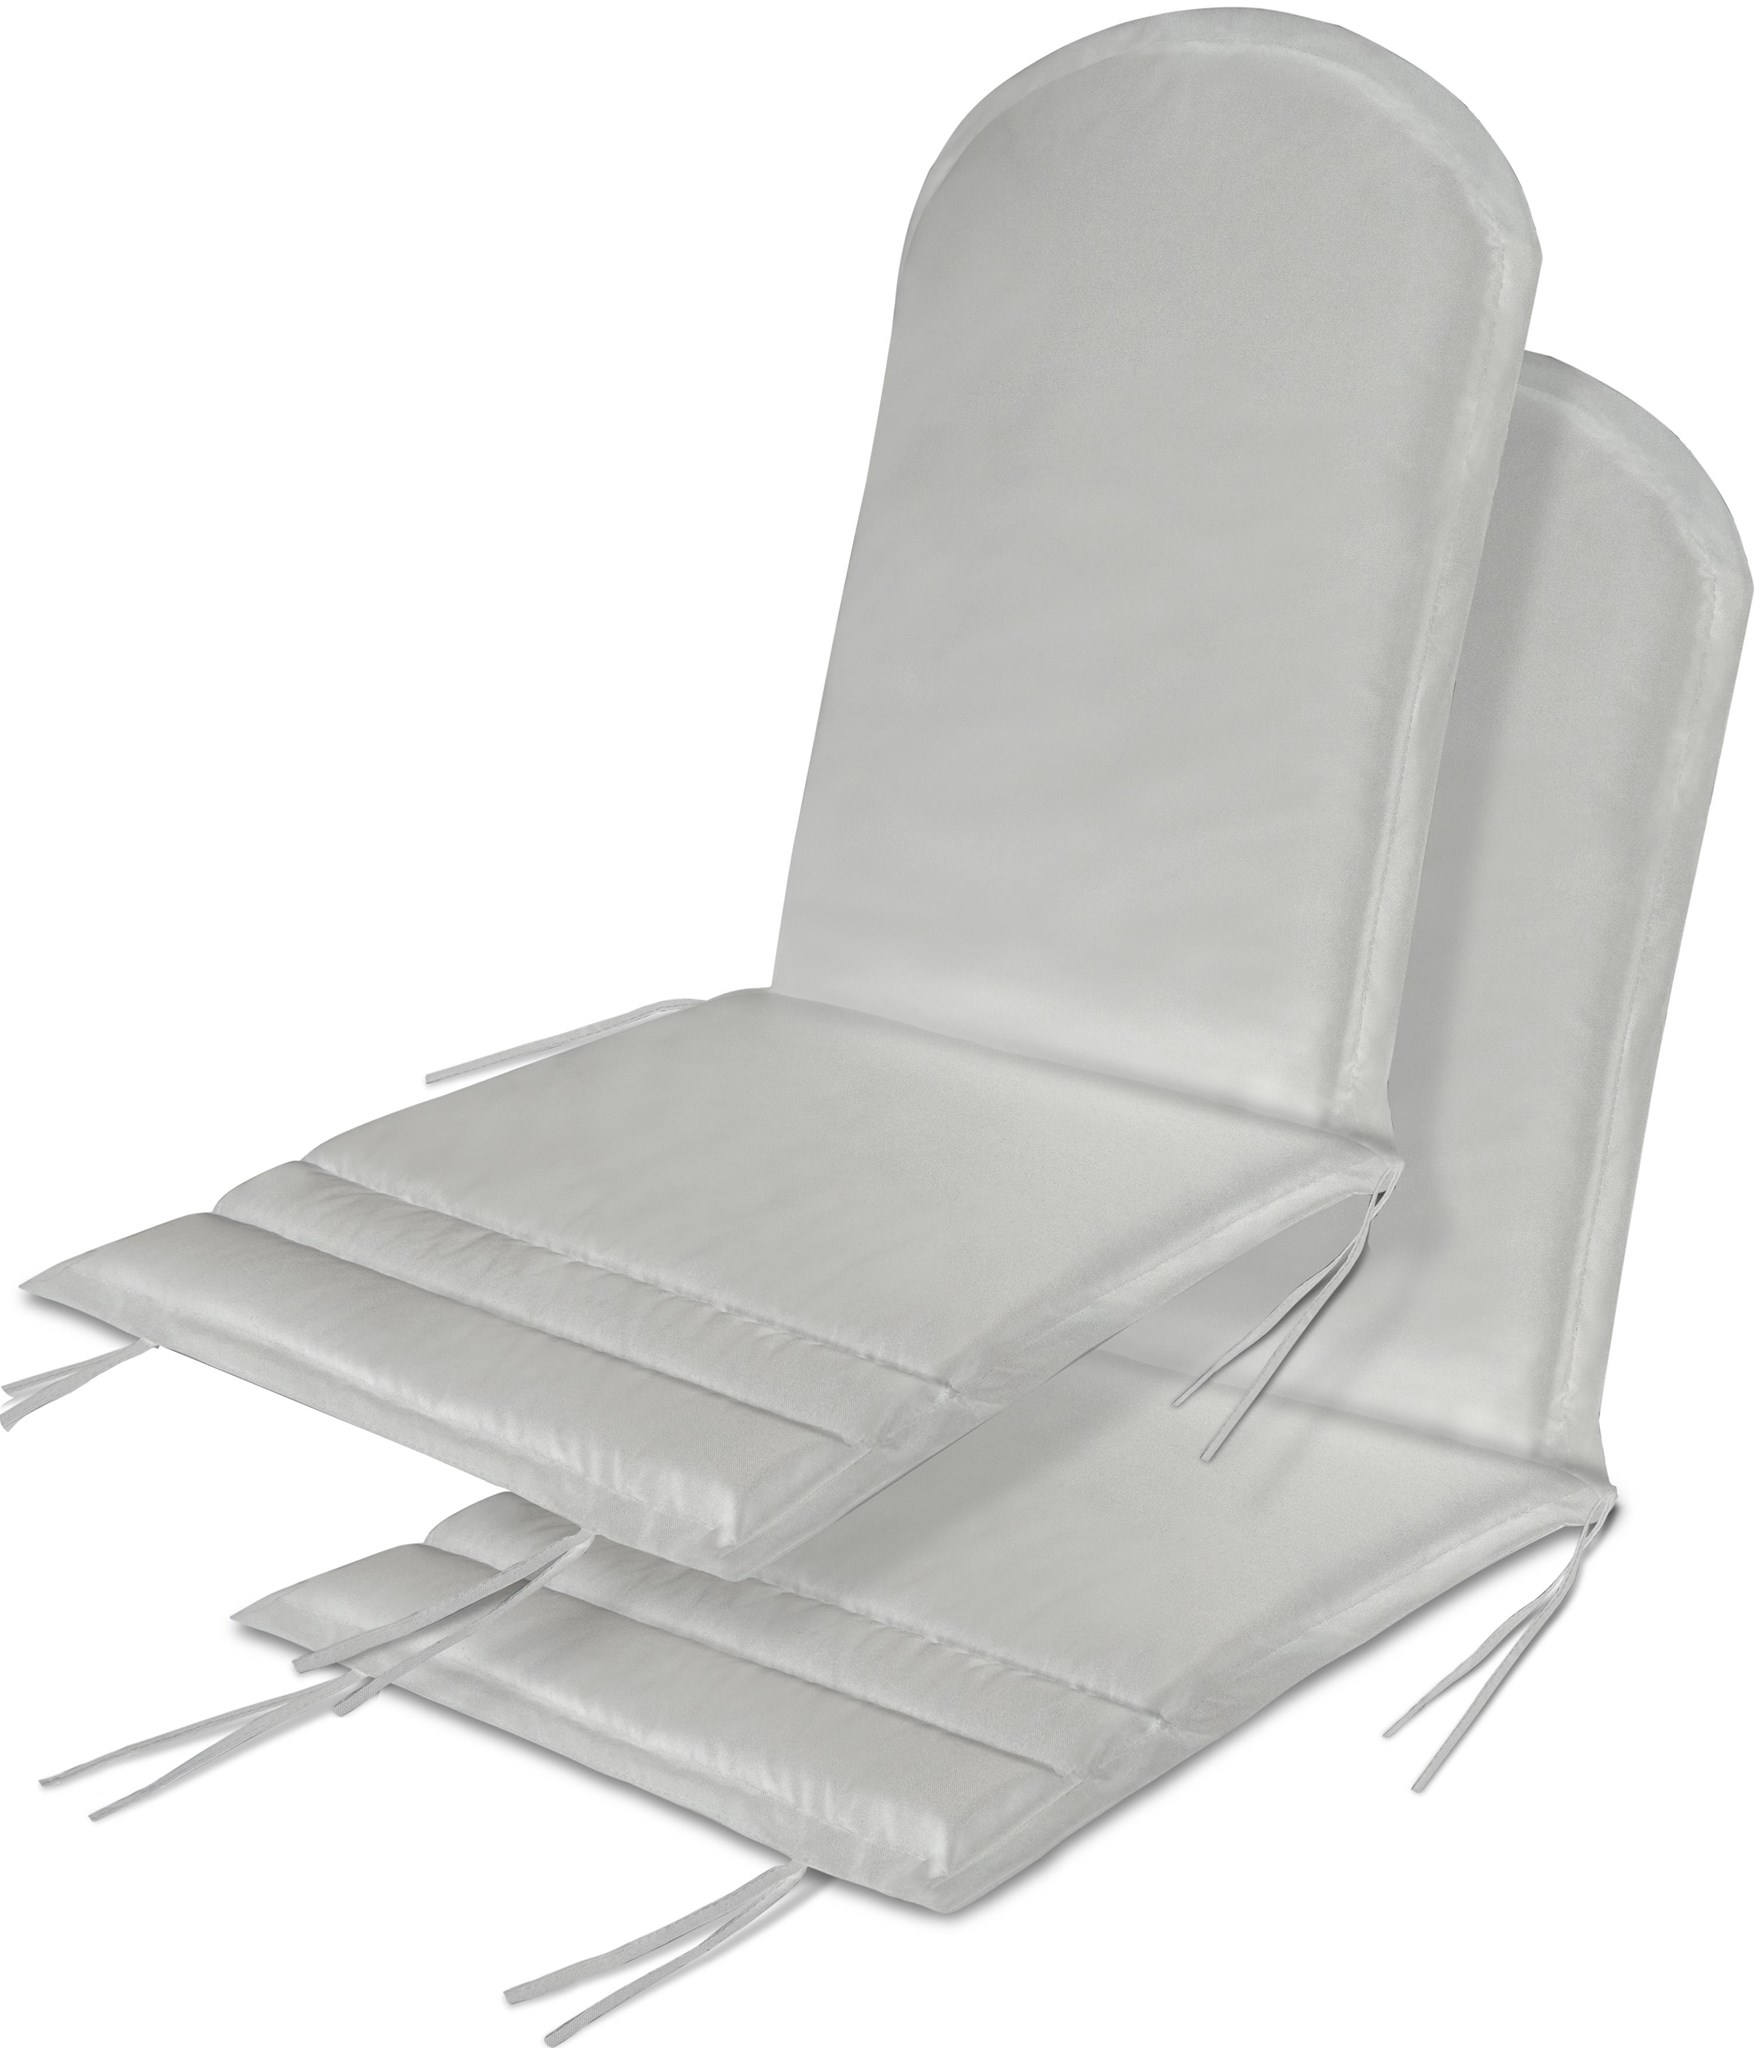 Bild von 2 x Stuhlauflage für Adirondack Gartenstuhl Weiß